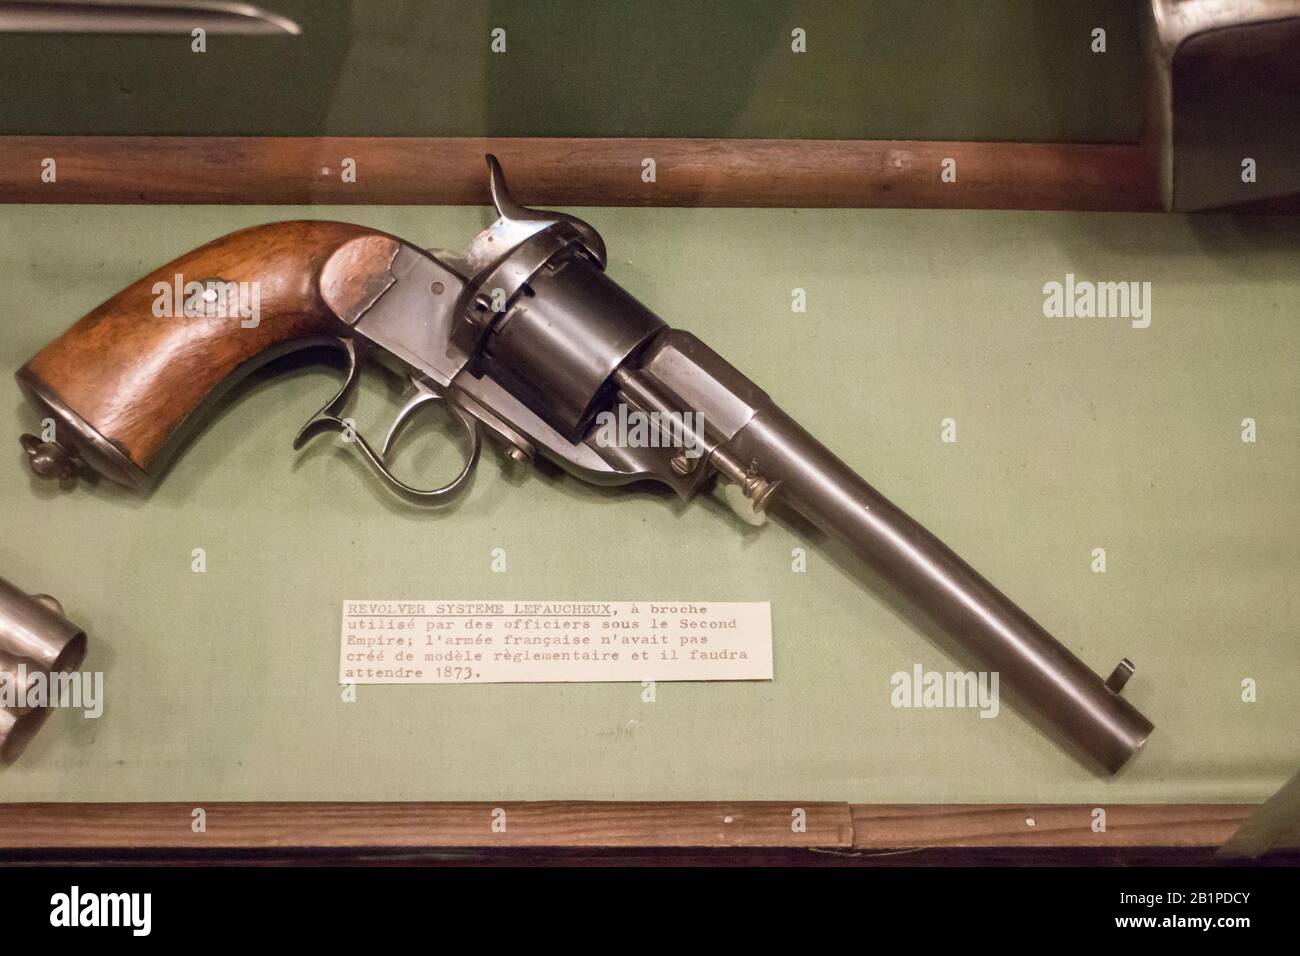 Musée de l'Emperi,Salon-de-Provence : Revolver système LEFAUCHEUX,cartouche à broche Stock Photo